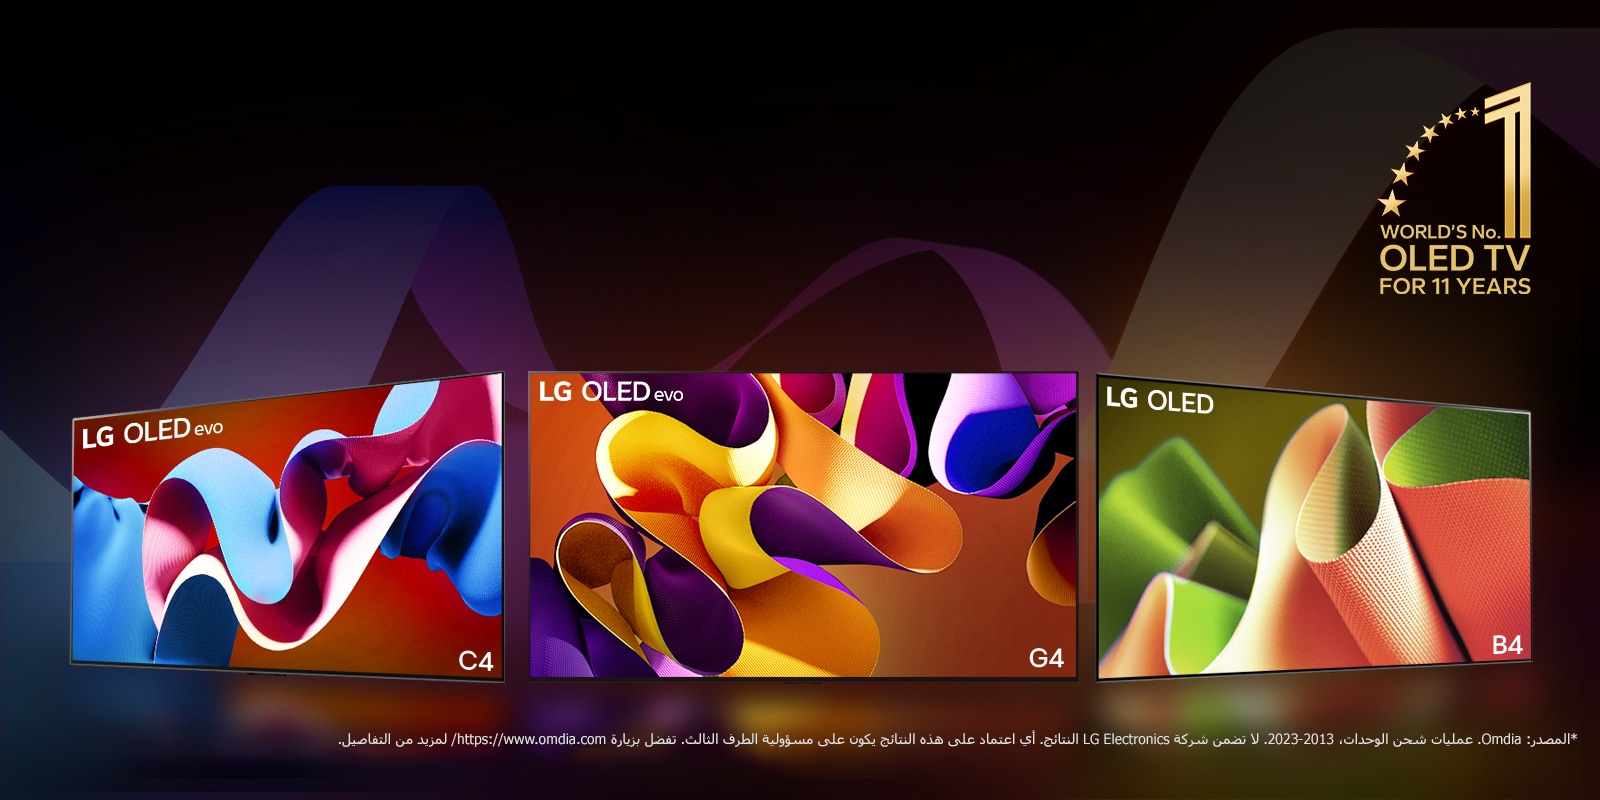 تصطف تلفزيونات LG OLED evo TV C4 وevo G4 وB4 أمام خلفية سوداء مع دوامات دقيقة من الألوان. ويظهر شعار "World's number 1 OLED TV for 11 Years" في الصورة.  وينص إخلاء المسؤولية على ما يلي: "المصدر: Omdia. عمليات شحن الوحدات، من 2013 إلى 2023. لا تضمن شركة LG Electronics النتائج. وأي اعتماد على هذه النتائج يكون على مسؤولية الطرف الثالث. تفضل بزيارة https://www.omdia.com/ لمزيد من التفاصيل."